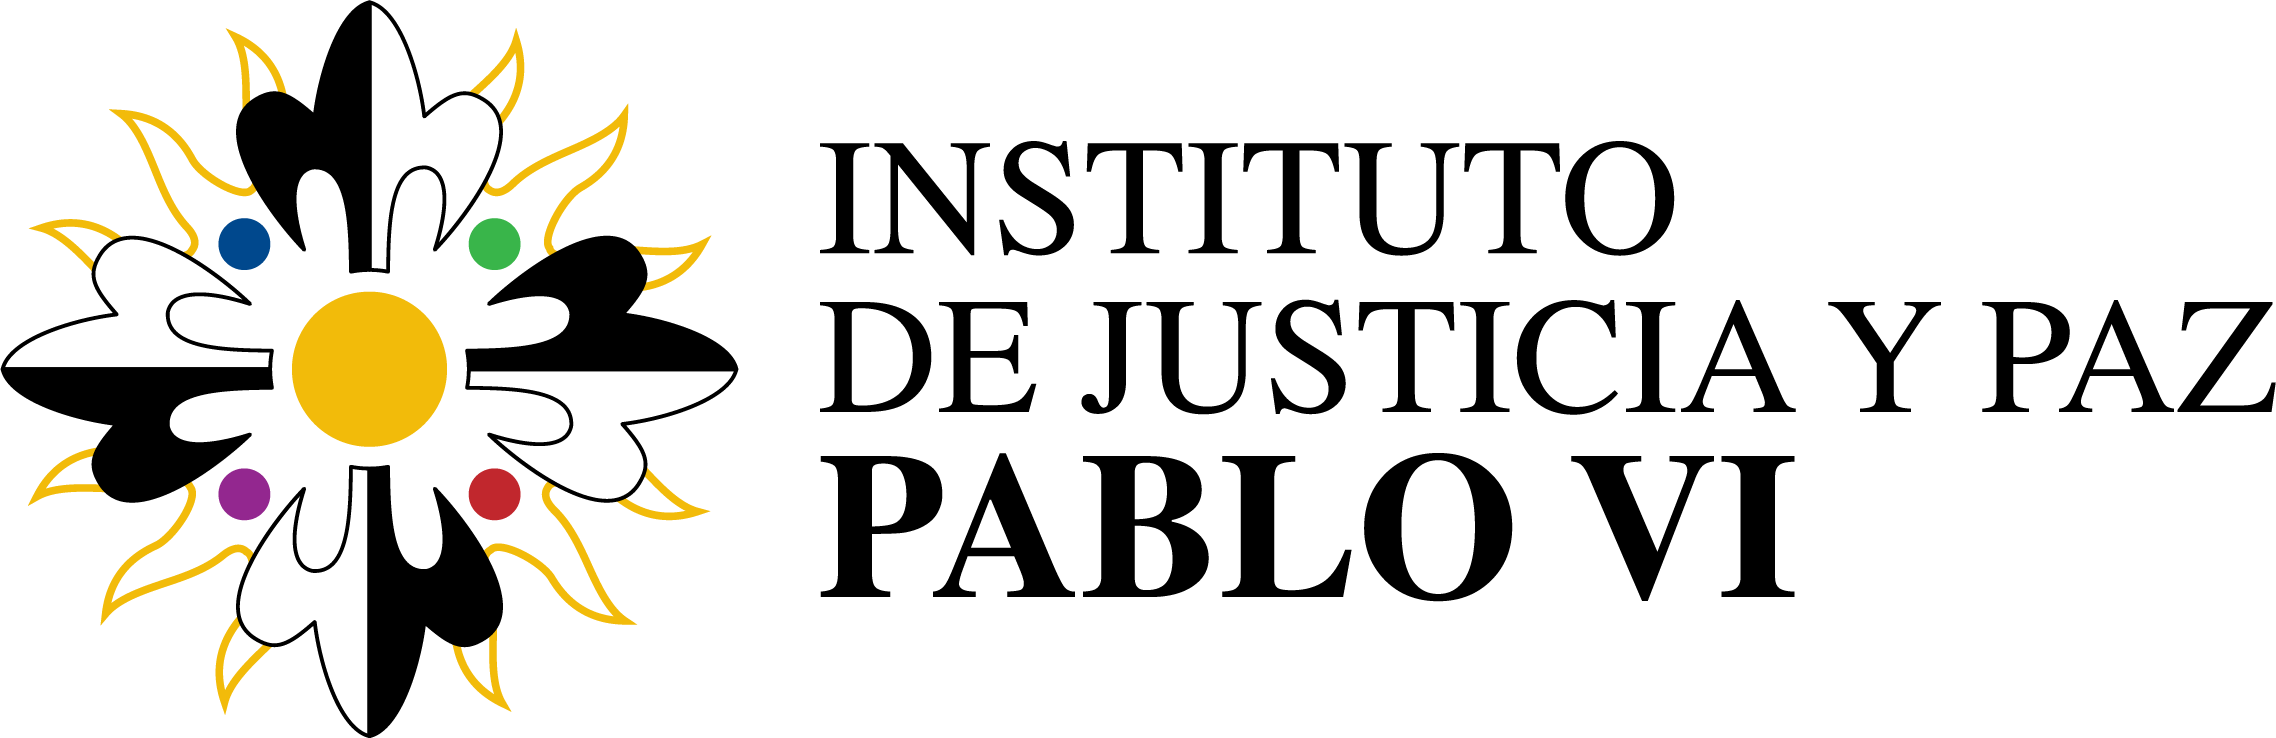 Instituto de Justicia y Paz Pablo VI